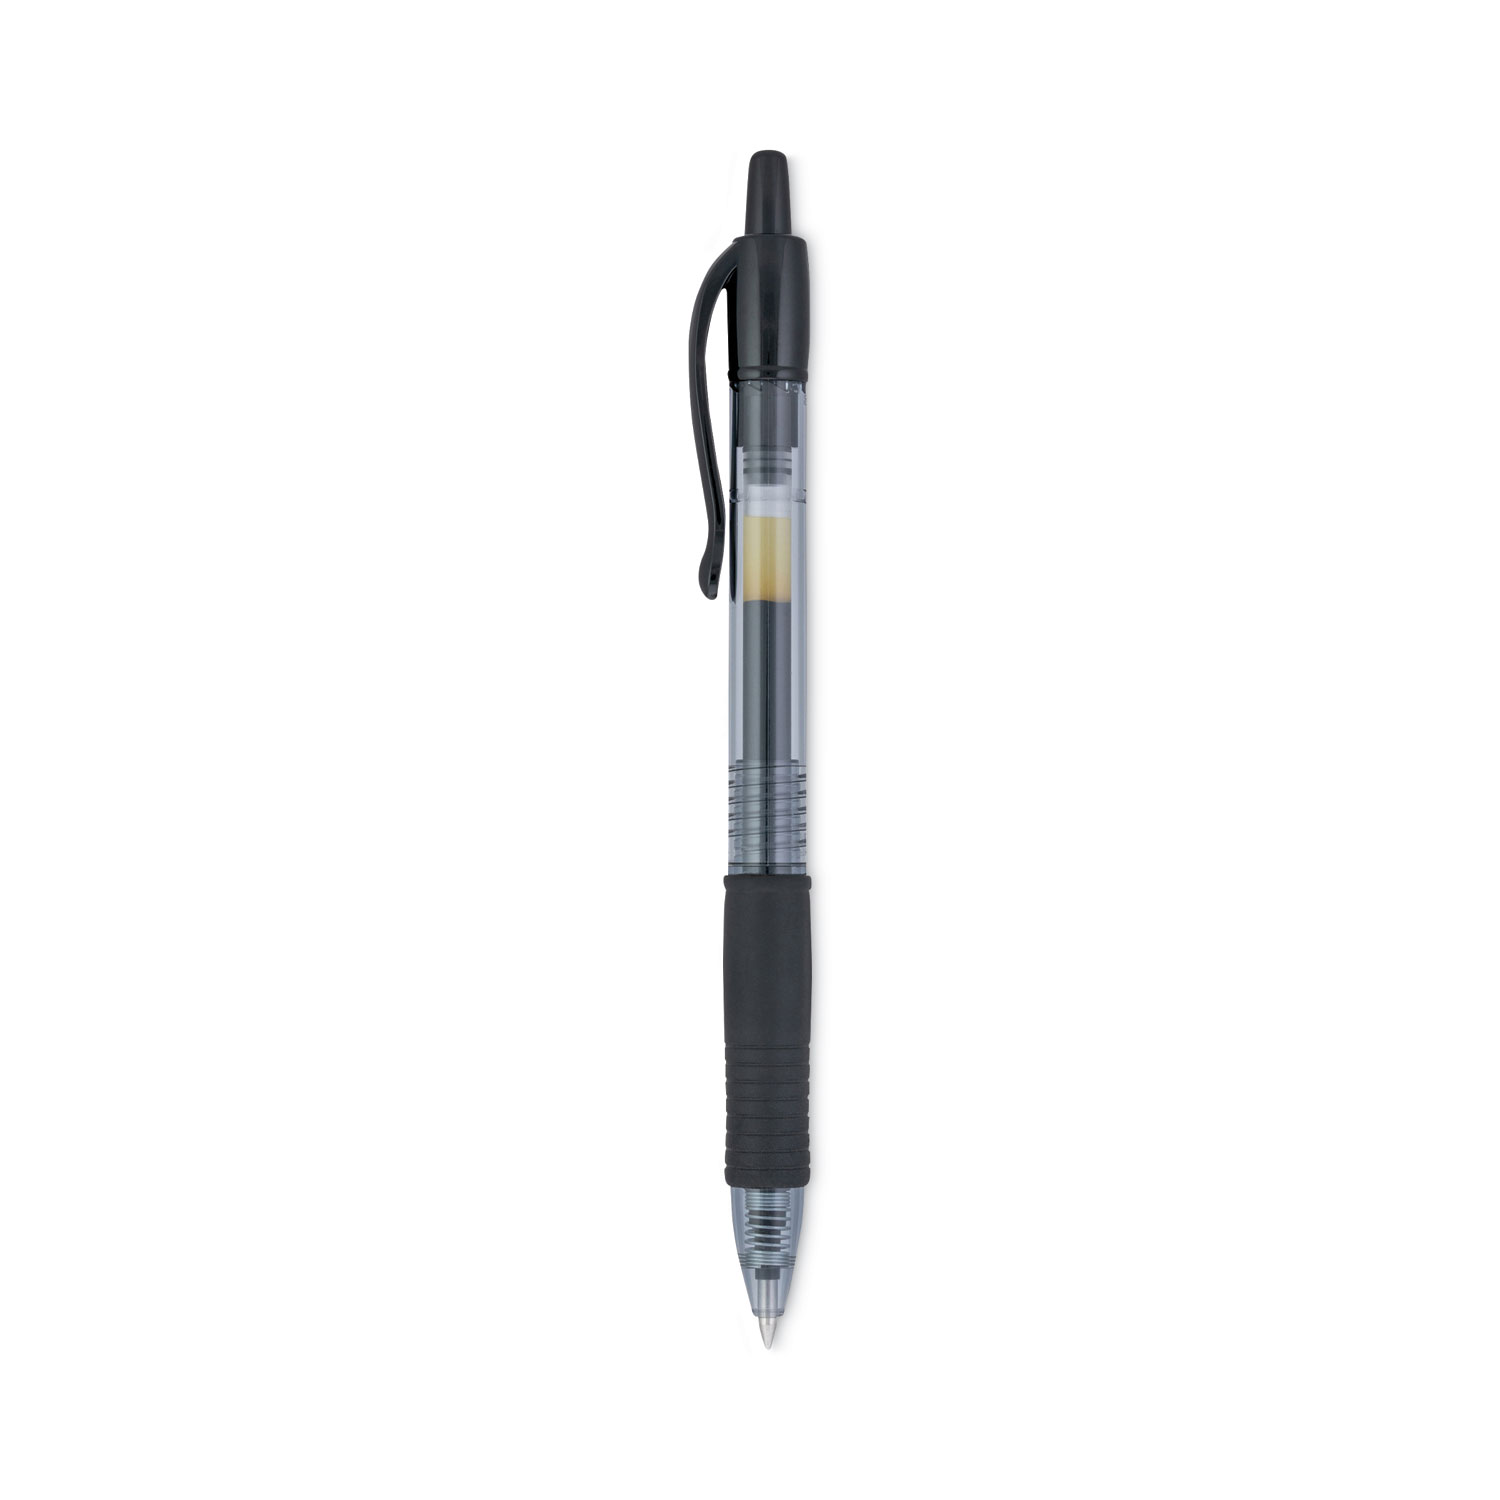 Pilot G2 Premium Retractable Gel Pen - PIL31031 